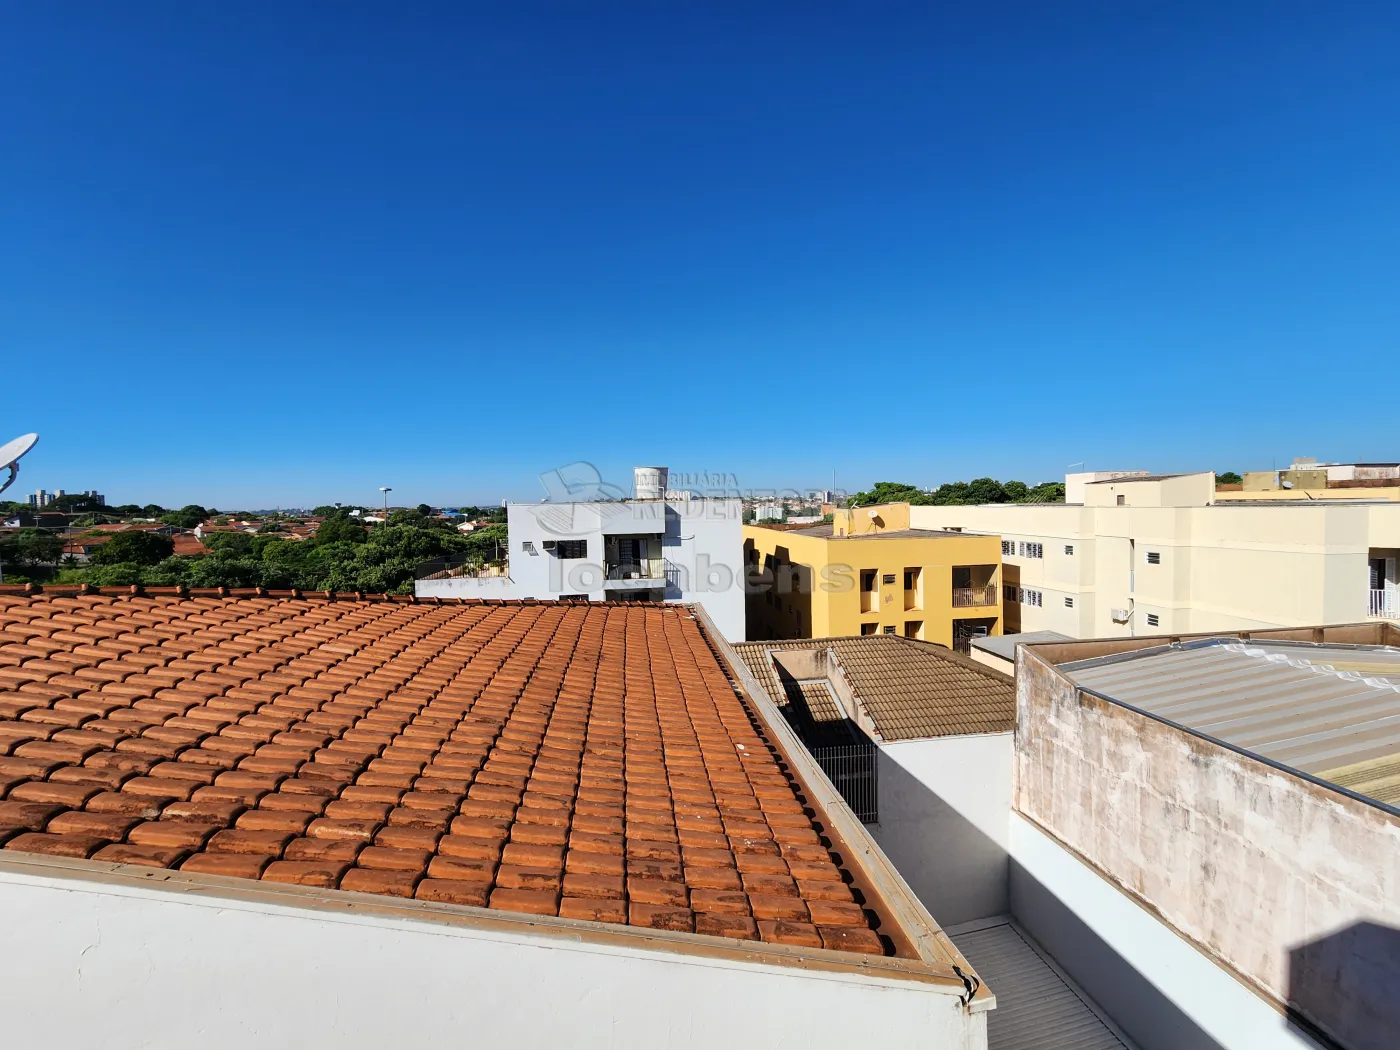 Alugar Apartamento / Padrão em São José do Rio Preto R$ 900,00 - Foto 8